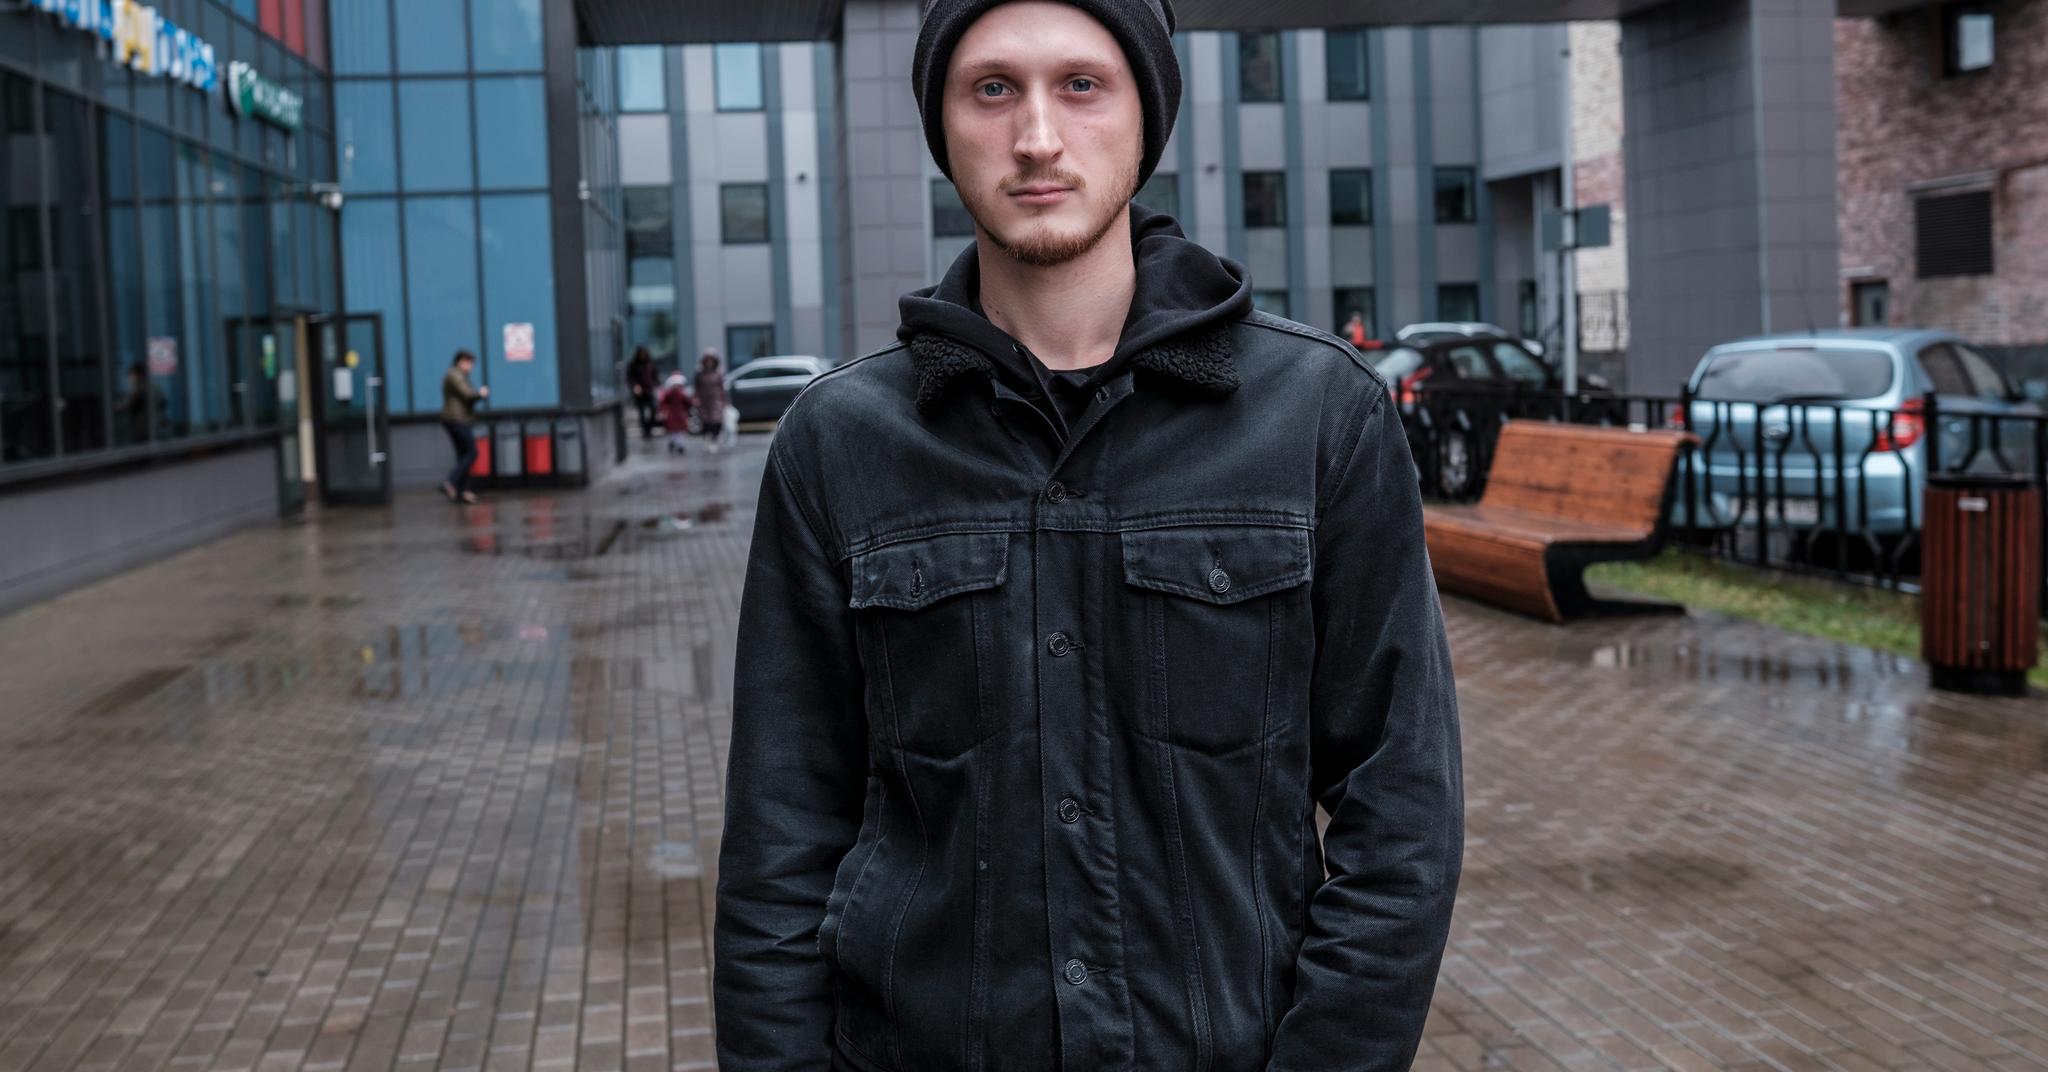 Pavel Jegorov (25) er sterkt mot Russlands krig mot Ukraina. I den russiske grunnloven fant han et smutthull.